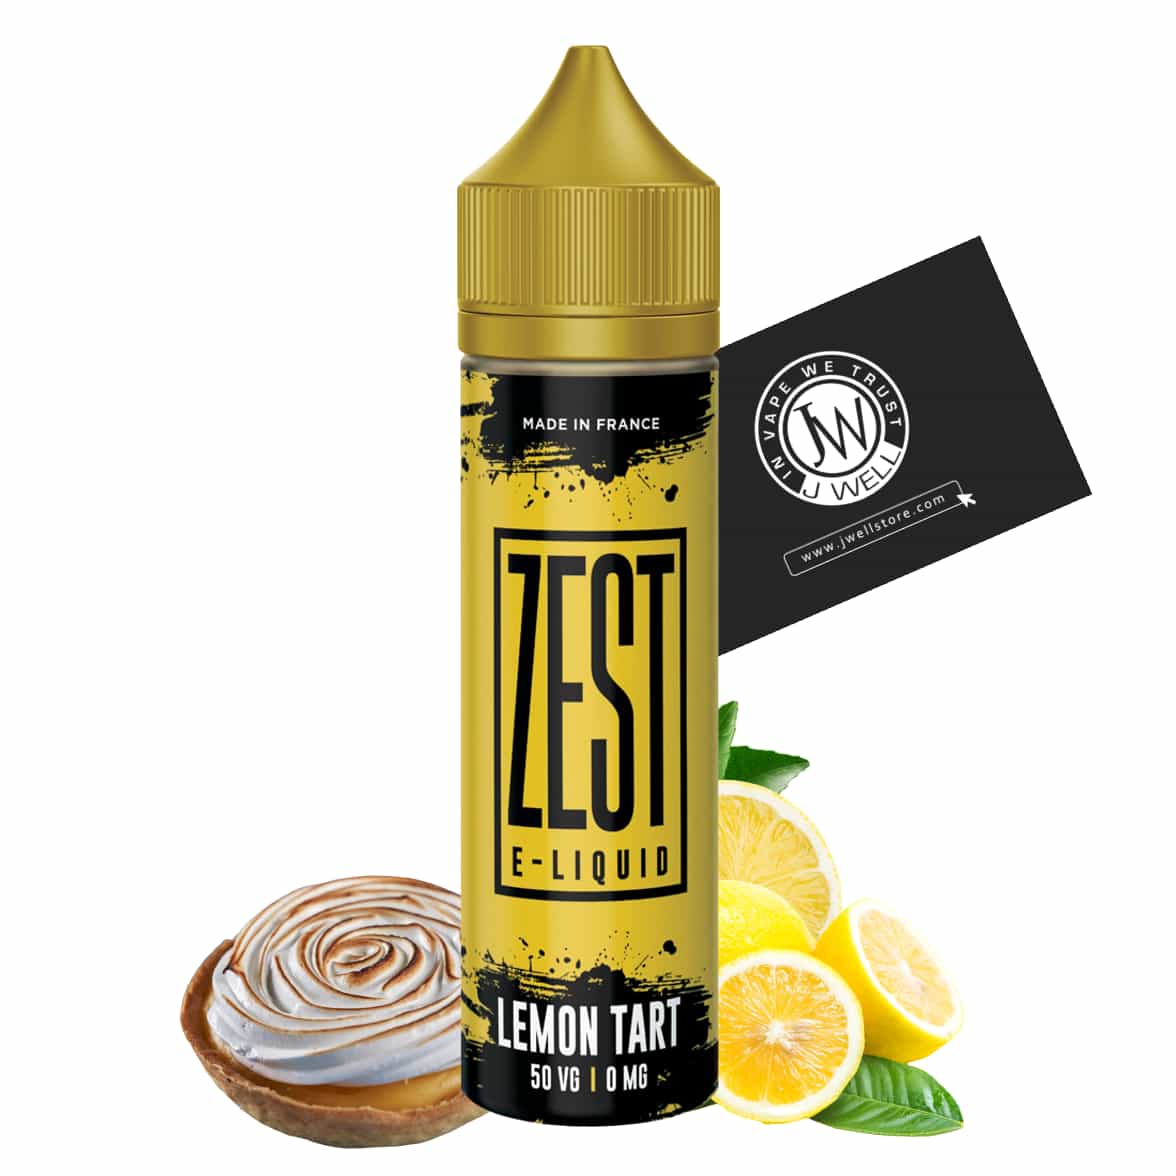 Image E liquide Lemon Tart 50 ml Zest